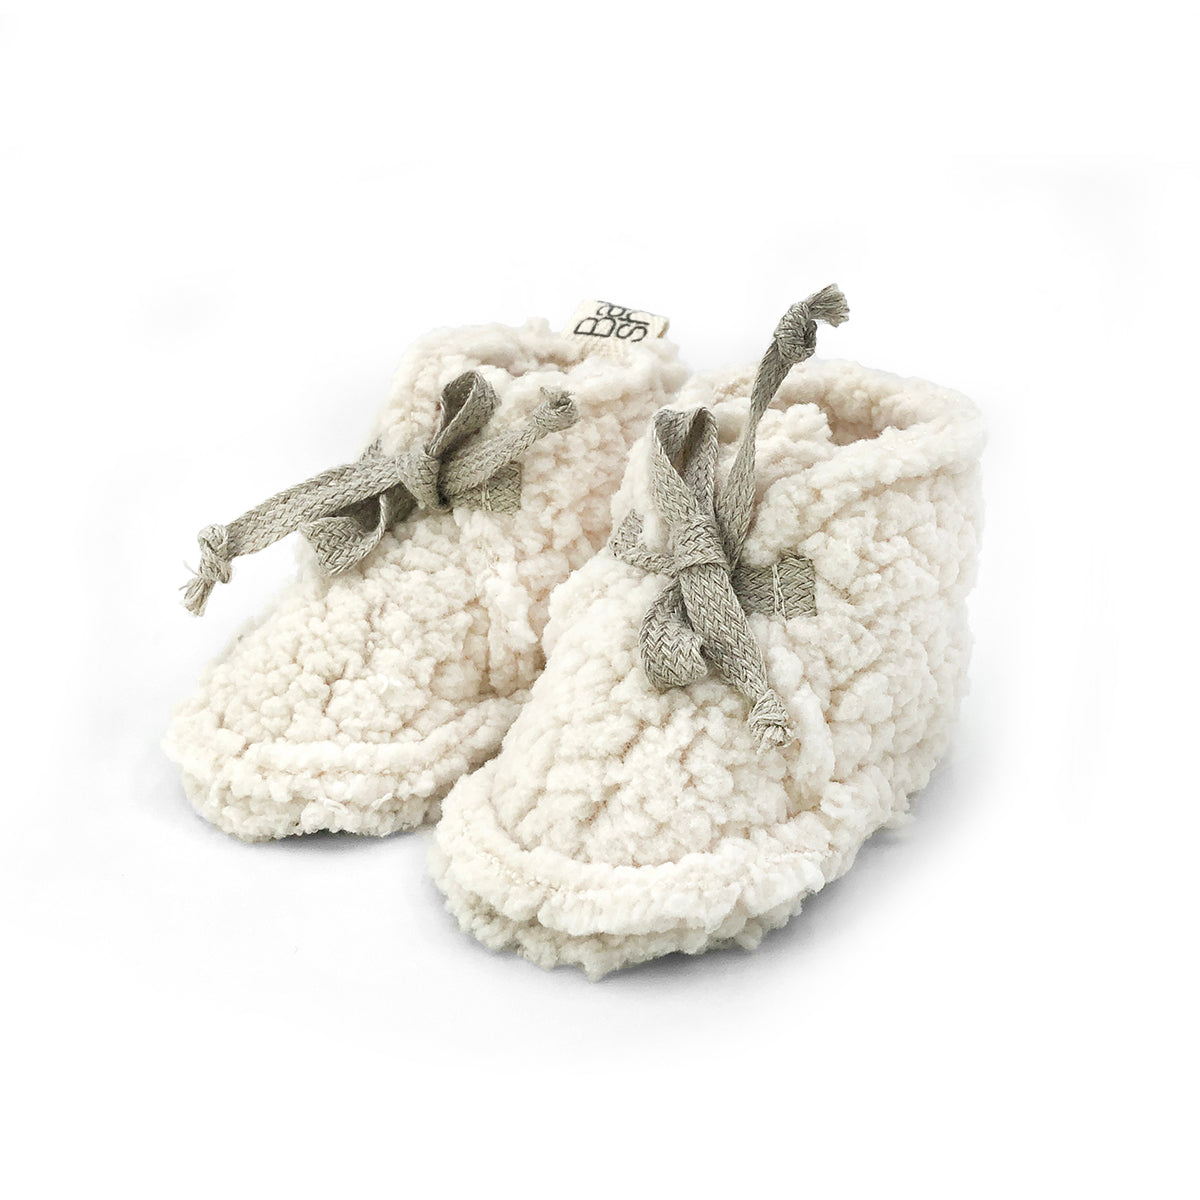 Chaussons de naissance doublé polaire, aspect mouton écru et lien en lin. Idéal pour les nouveau-nés. Confortable, doux et chaud. Babyshower.